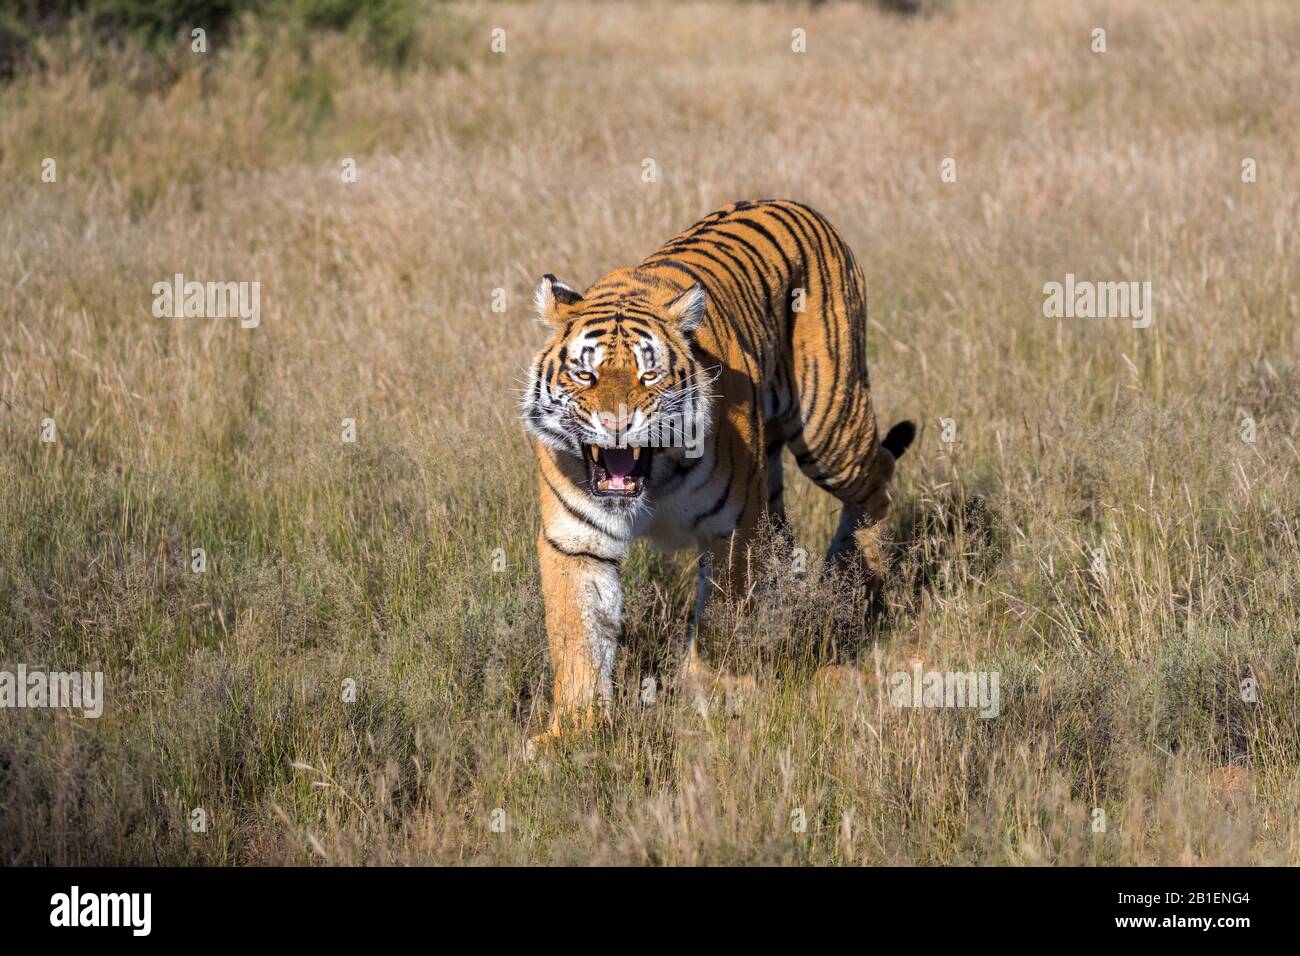 Tigre asiatique (Bengale) (Panthera tigris tigris), femme adulte, attitude agressive, réserve privée, Afrique du Sud Banque D'Images